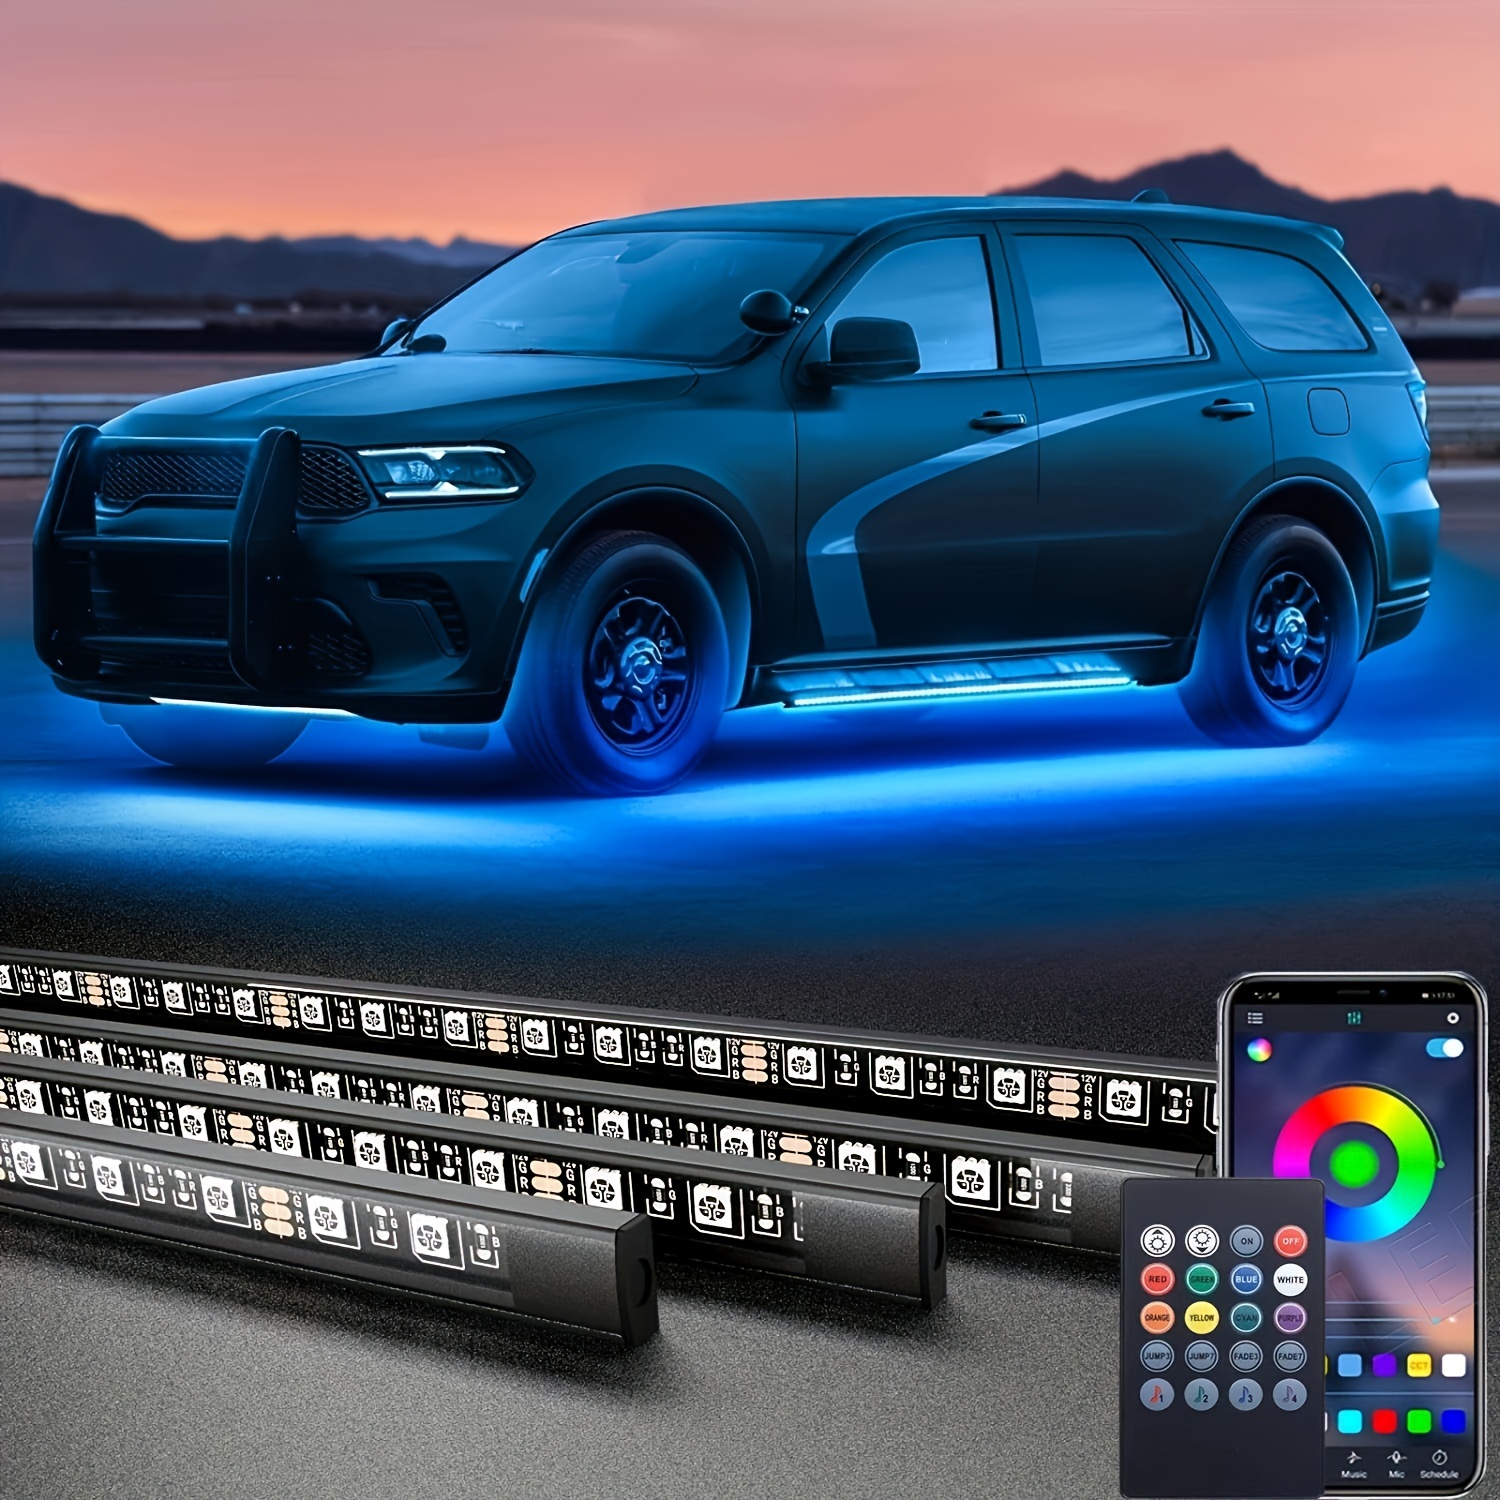 Bande lumineuse LED couleur de rêve, Kit d'accent néon pour voiture,  imperméable, éclairage extérieur, compatible Bluetooth, 4 pièces